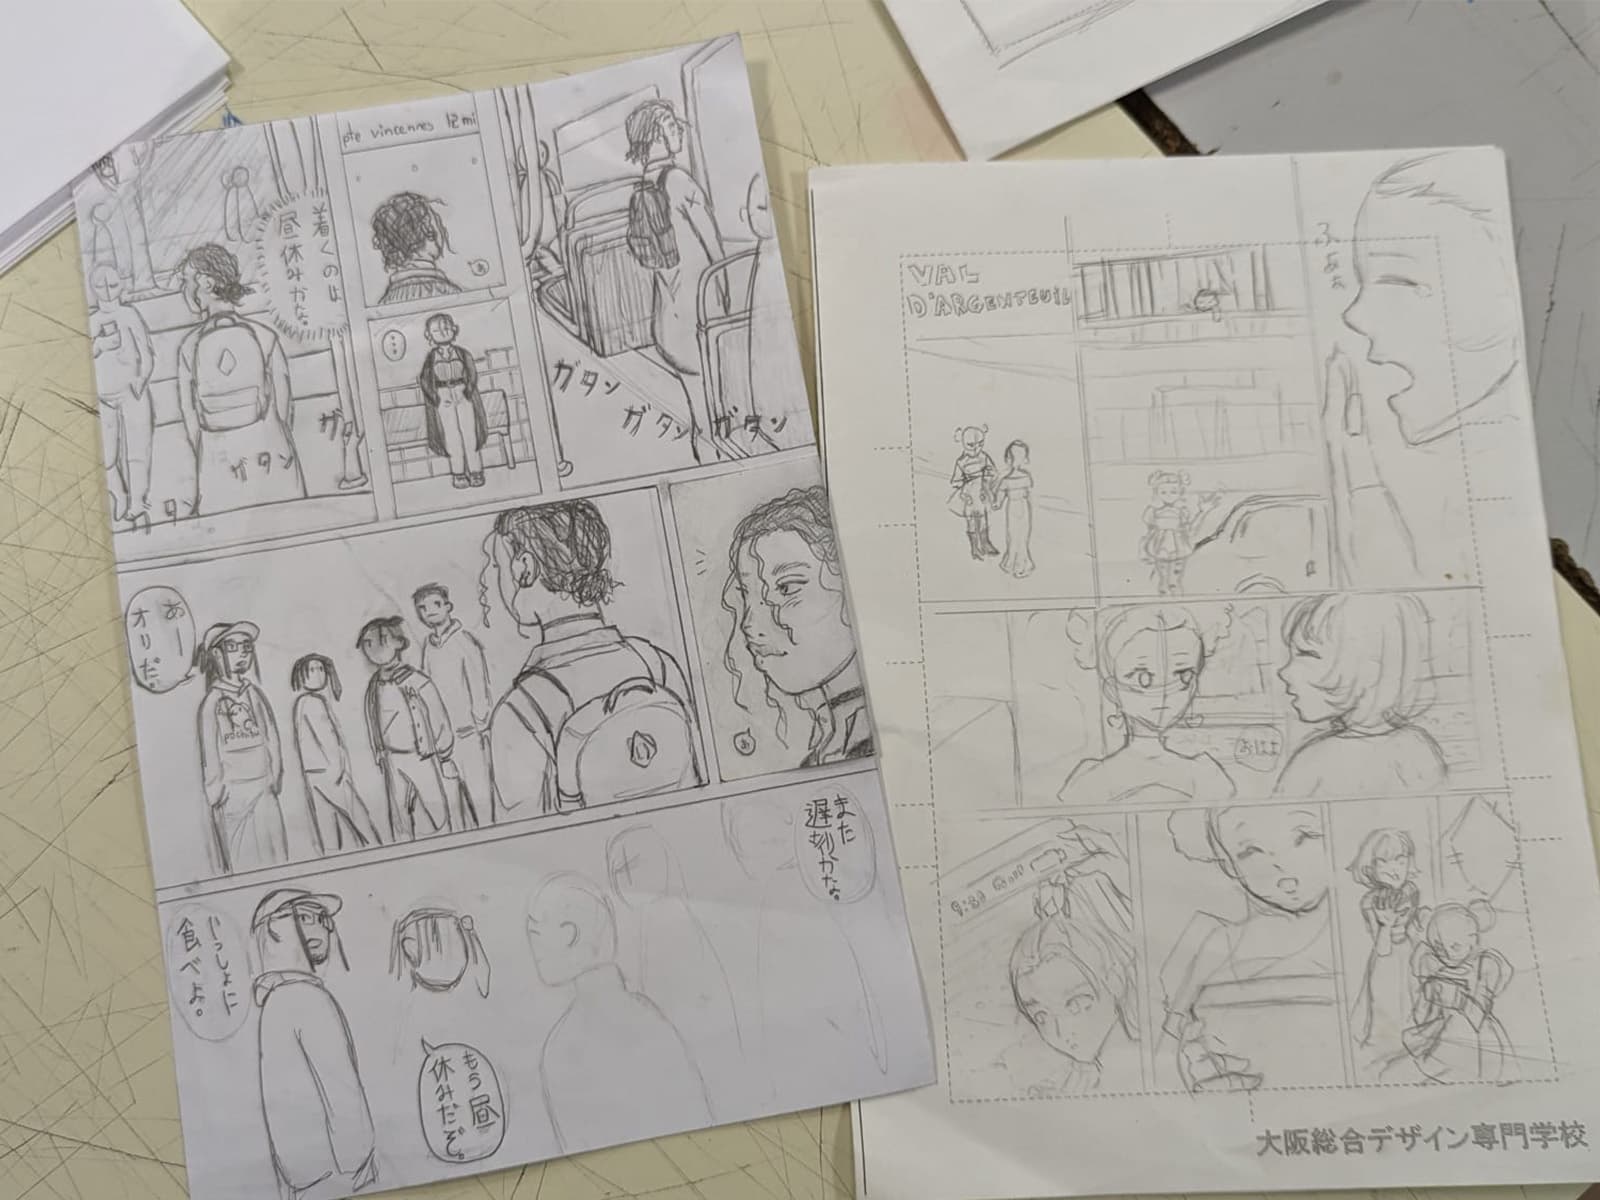 Masterclass Manga avec des professeurs venus tout droit du Japon